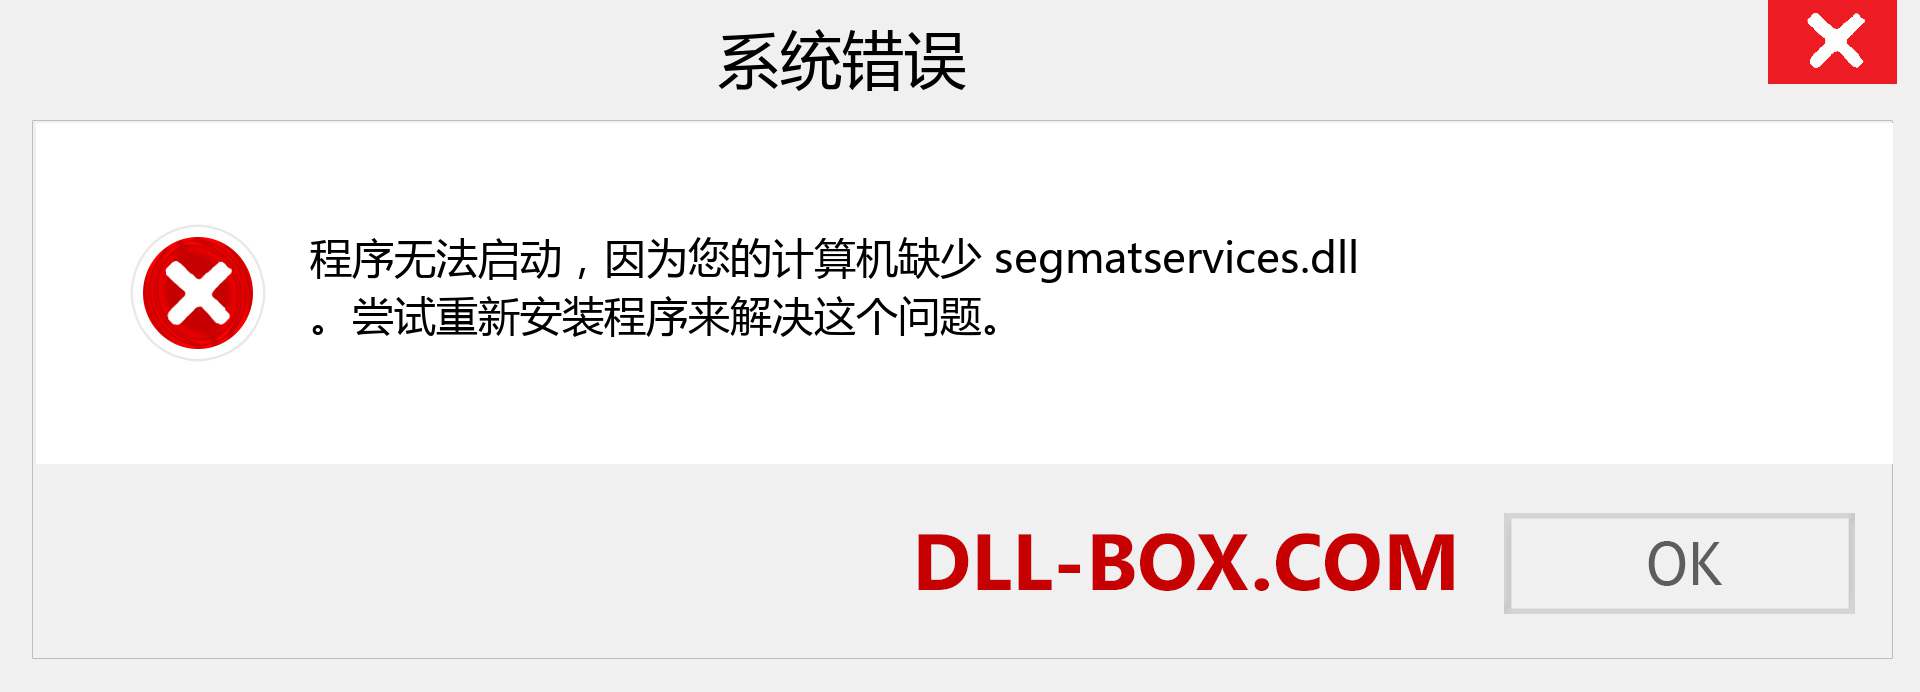 segmatservices.dll 文件丢失？。 适用于 Windows 7、8、10 的下载 - 修复 Windows、照片、图像上的 segmatservices dll 丢失错误